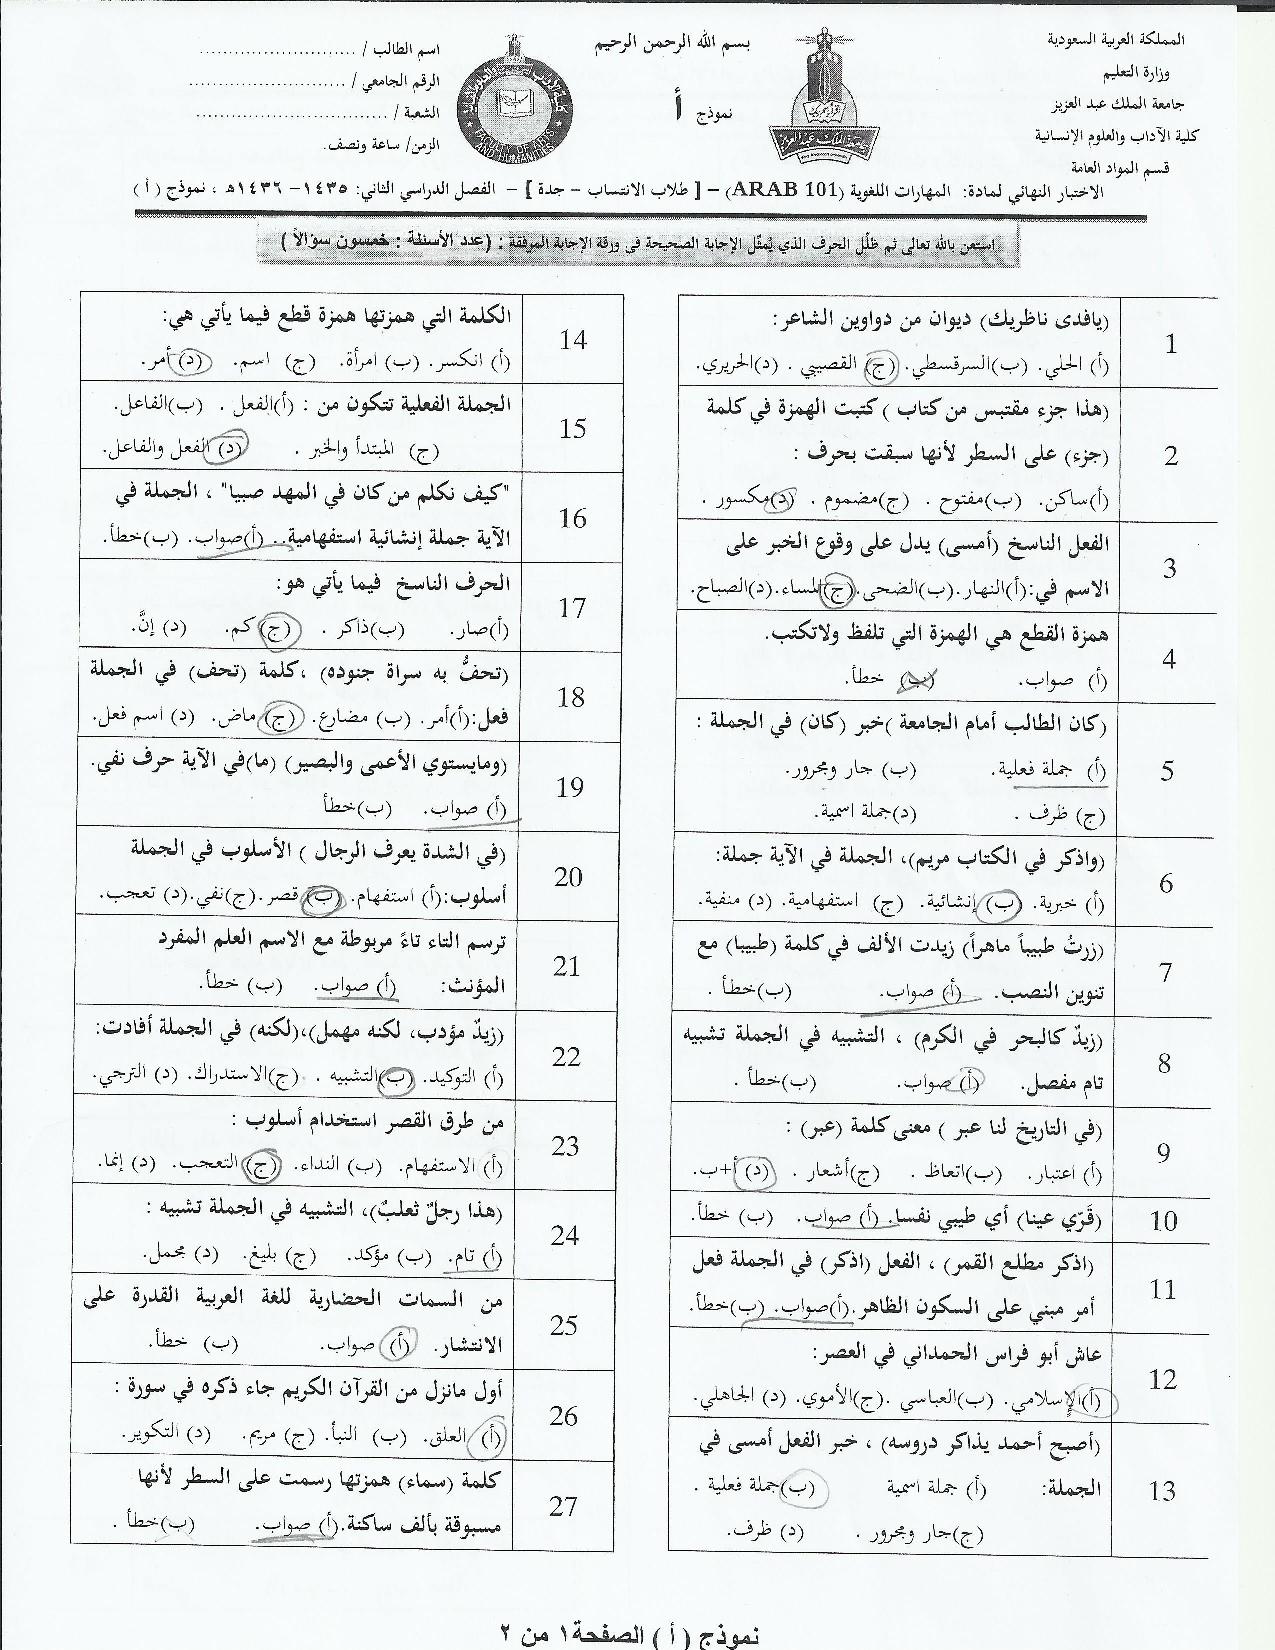 اسئلة اختبار المهارات اللغوية arab 101 انتساب الفصل الثاني 1436هـ نموذج (أ)